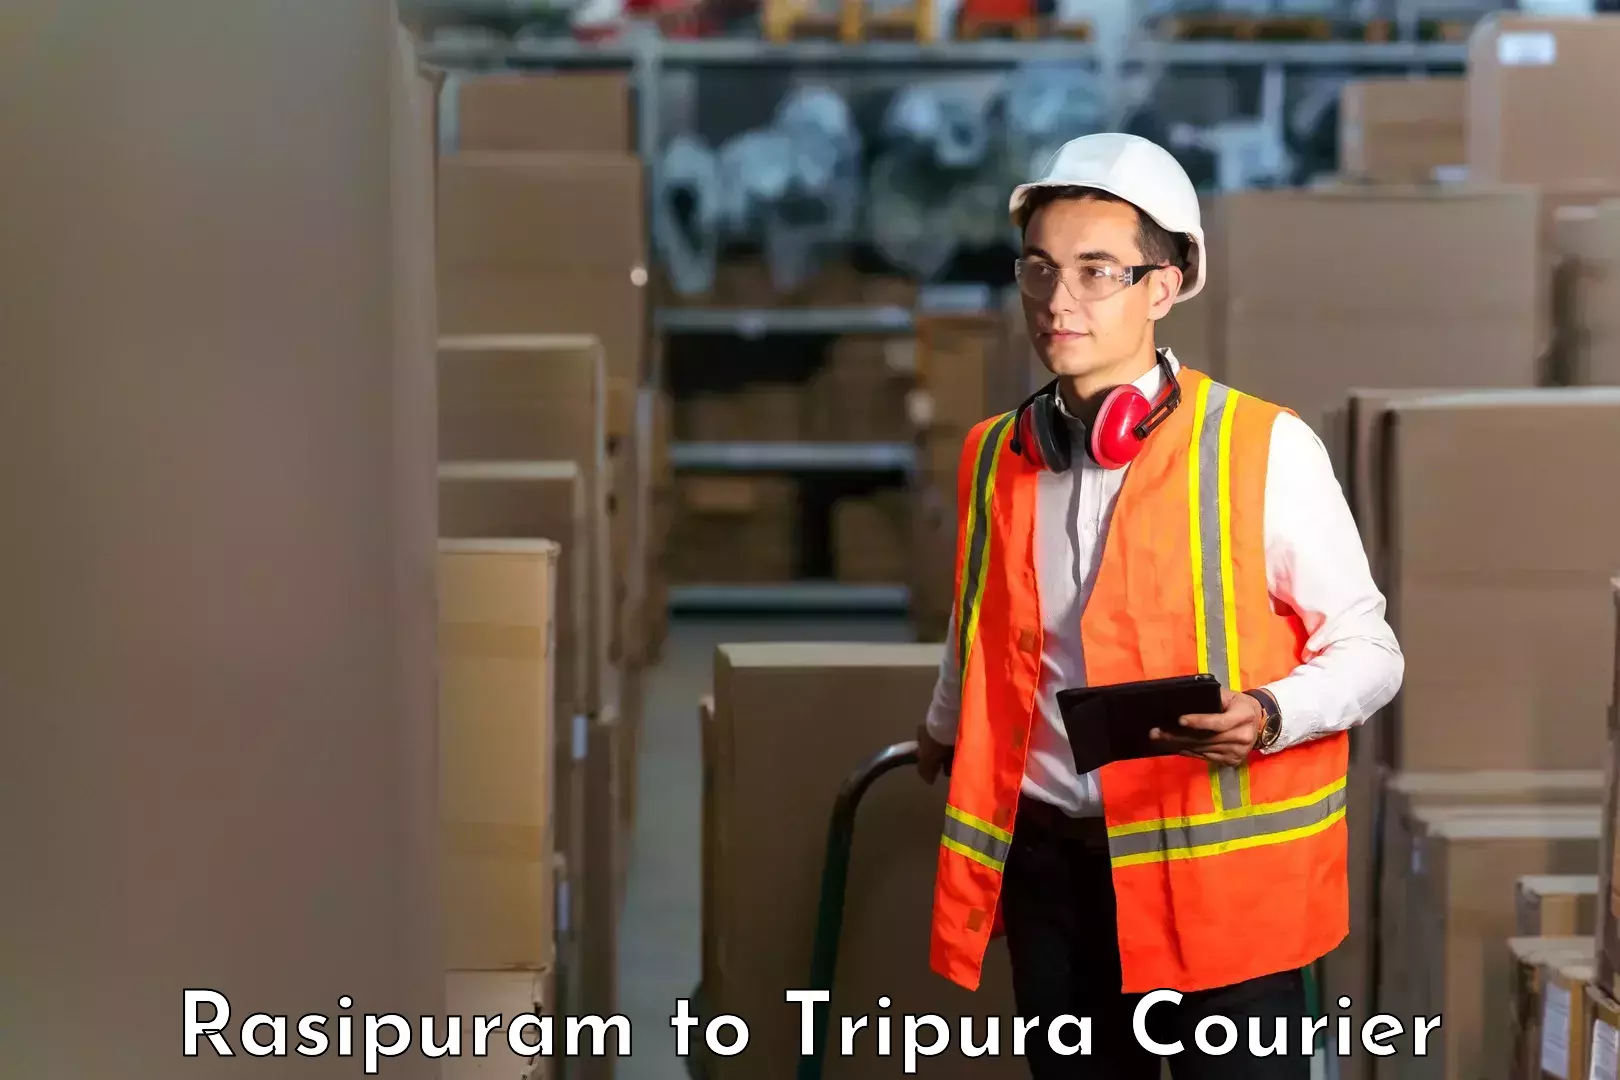 Efficient order fulfillment Rasipuram to Tripura